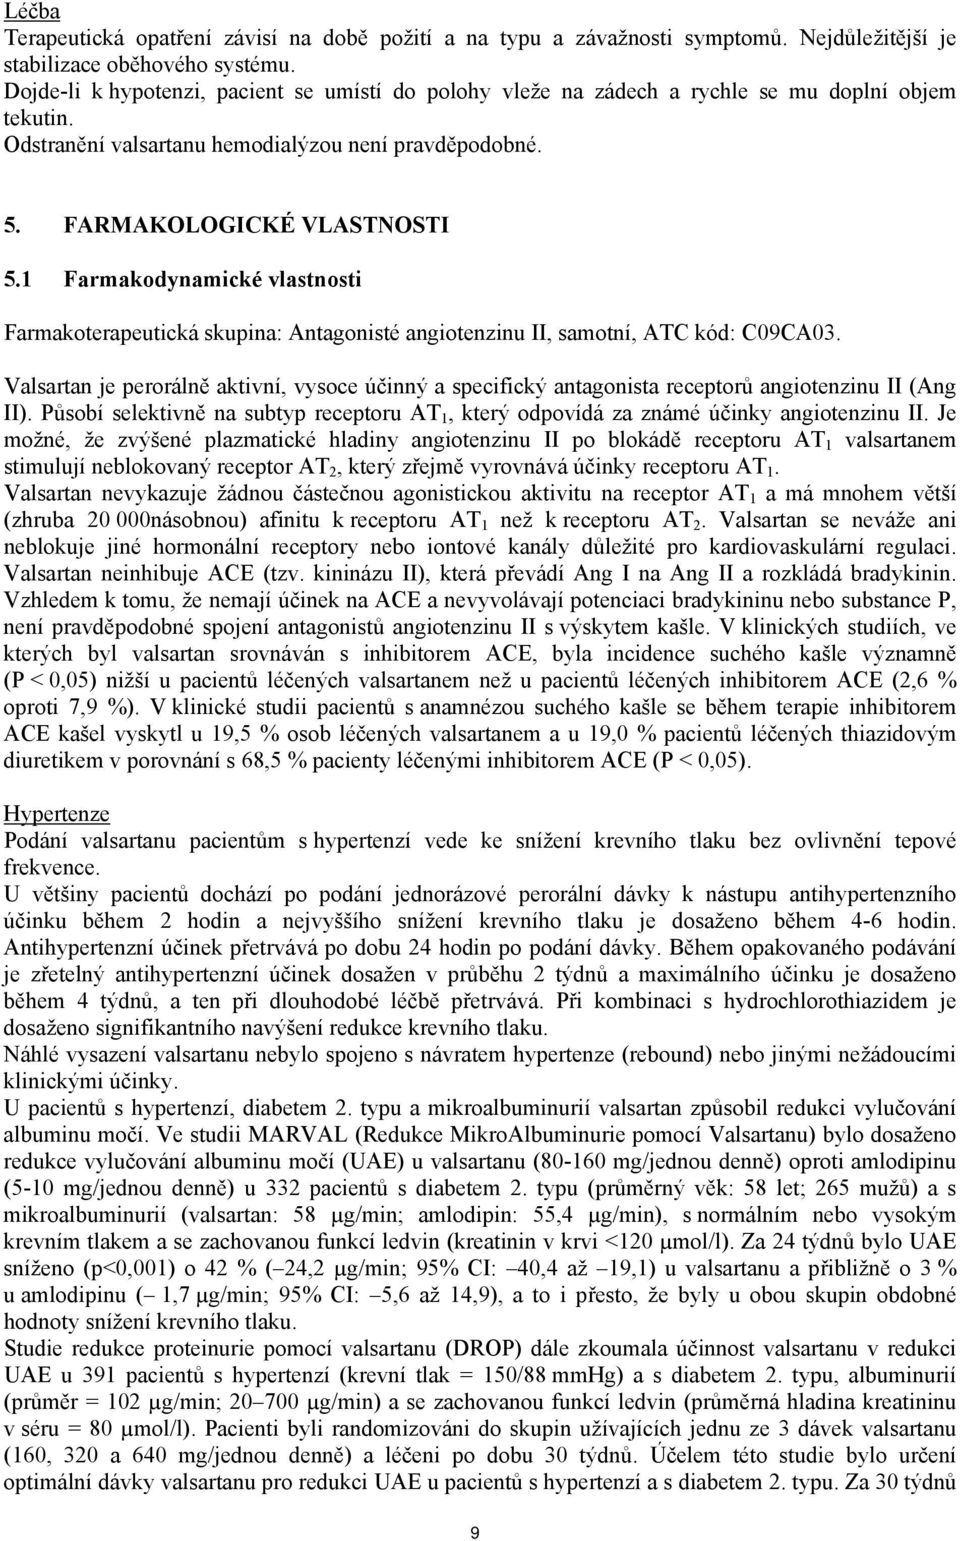 1 Farmakodynamické vlastnosti Farmakoterapeutická skupina: Antagonisté angiotenzinu II, samotní, ATC kód: C09CA03.